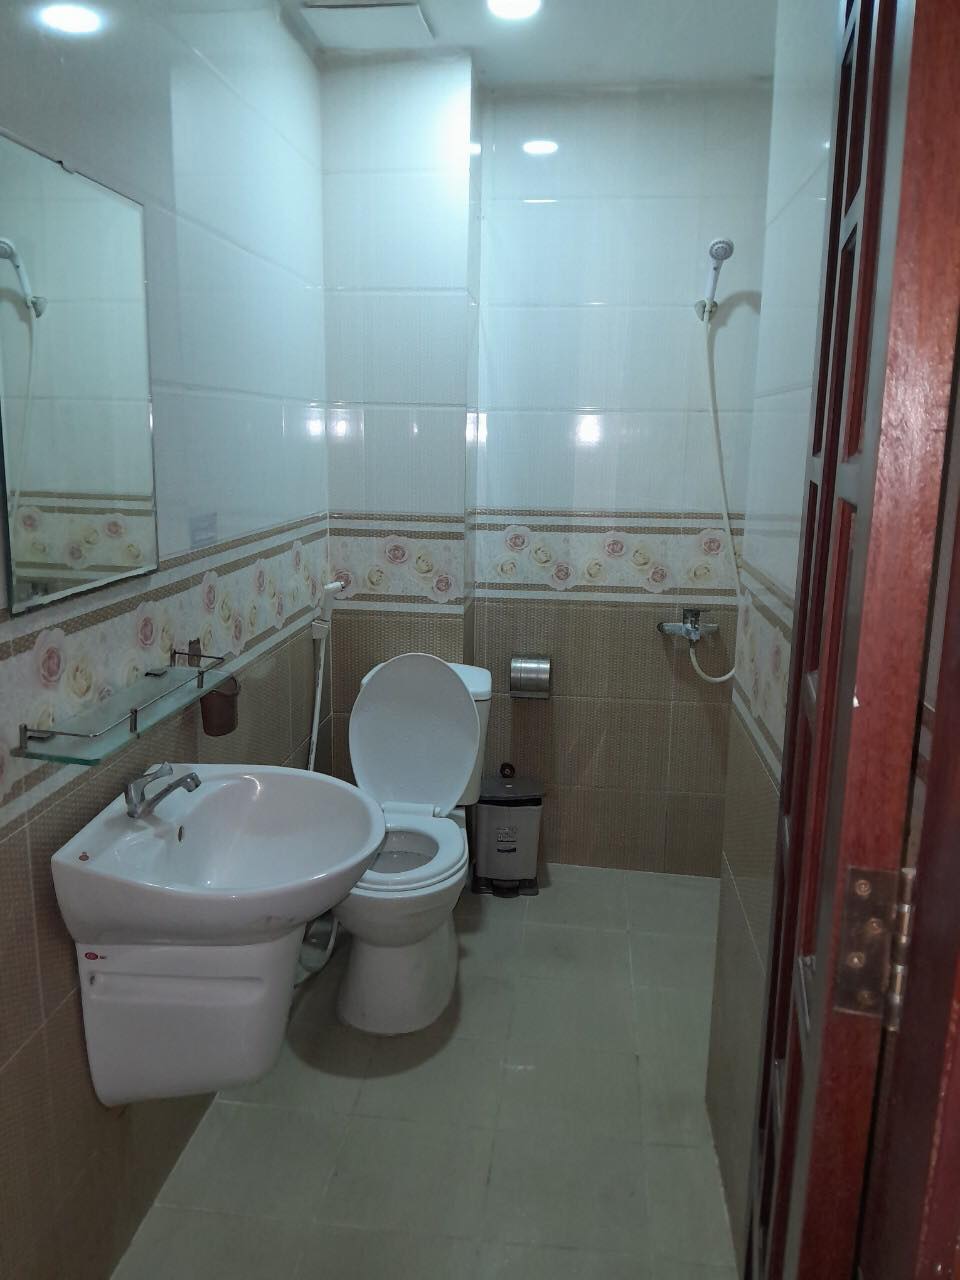 (Gò Vấp)Bán gấp khách sạn có hầm,14Phòng Nguyễn Oanh 80m2 6tầng 10.5tỷ.